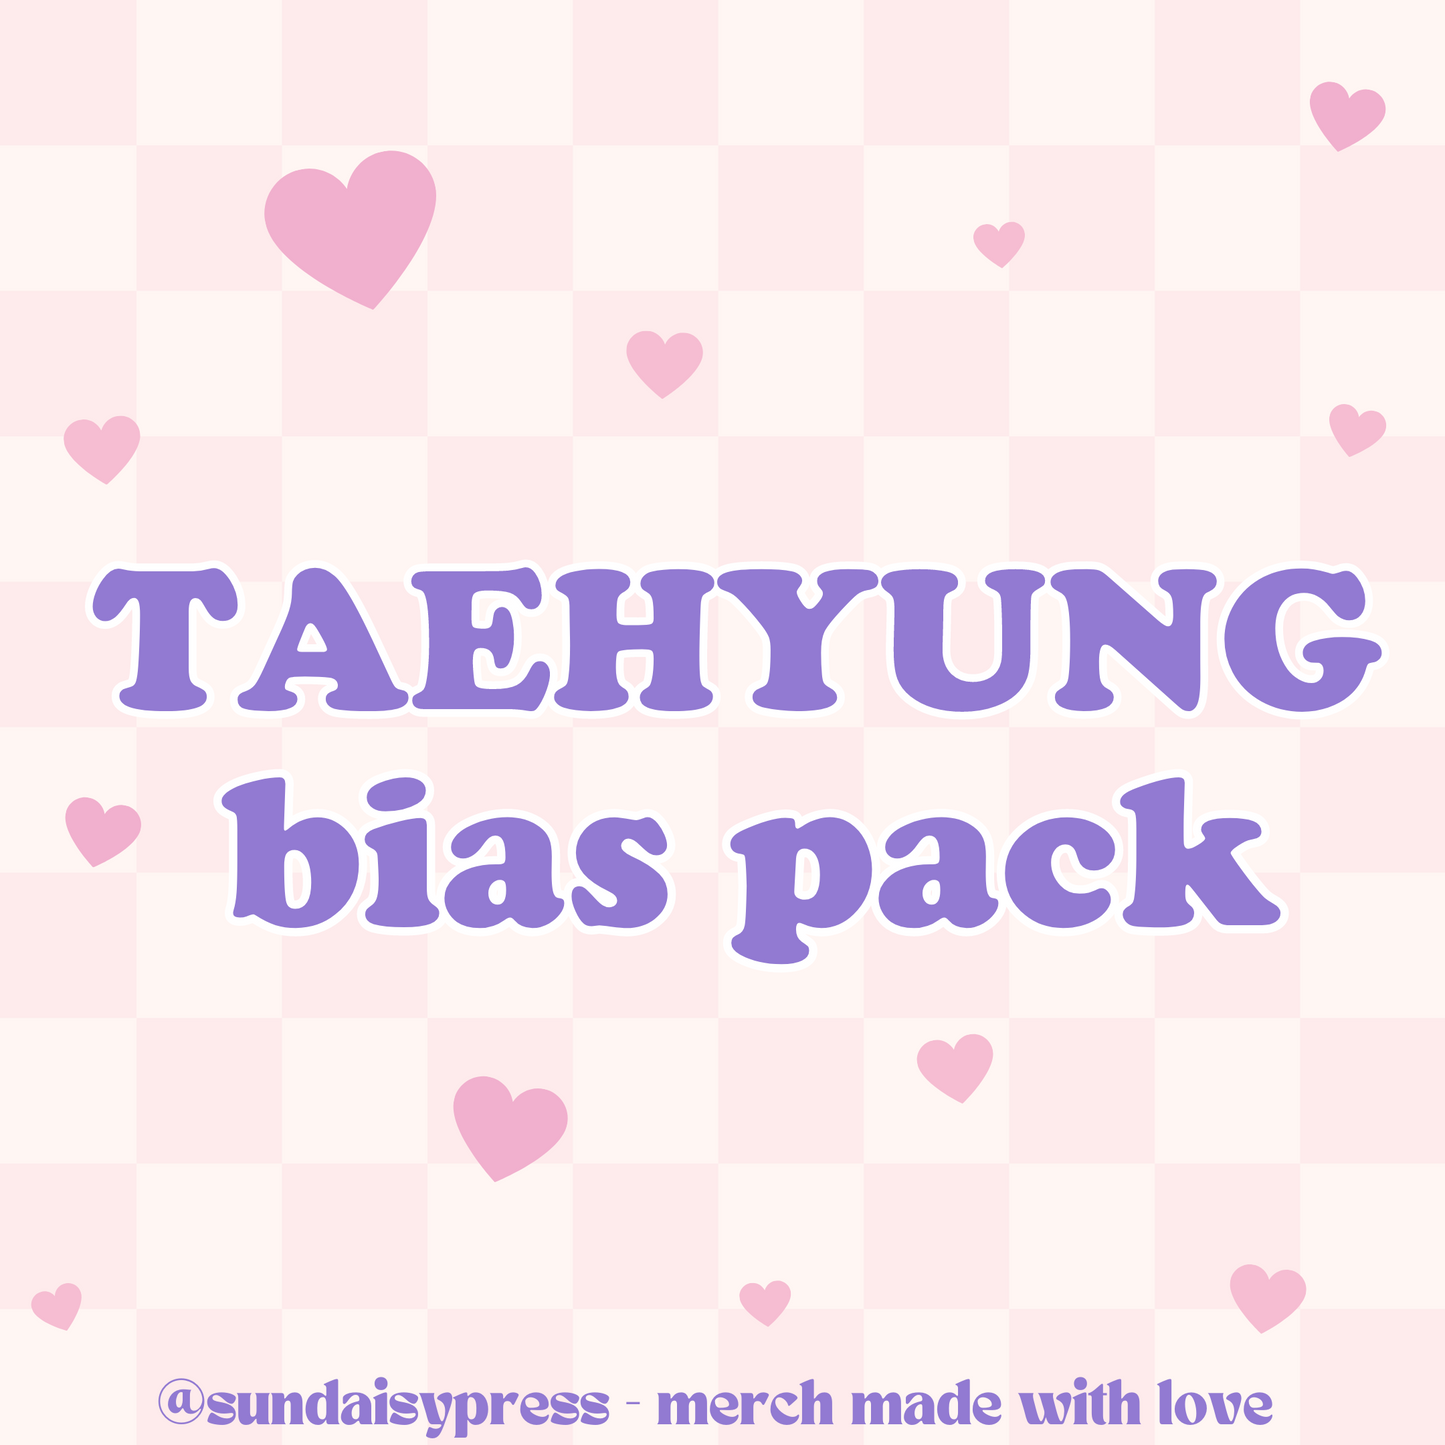 Taehyung bias pack